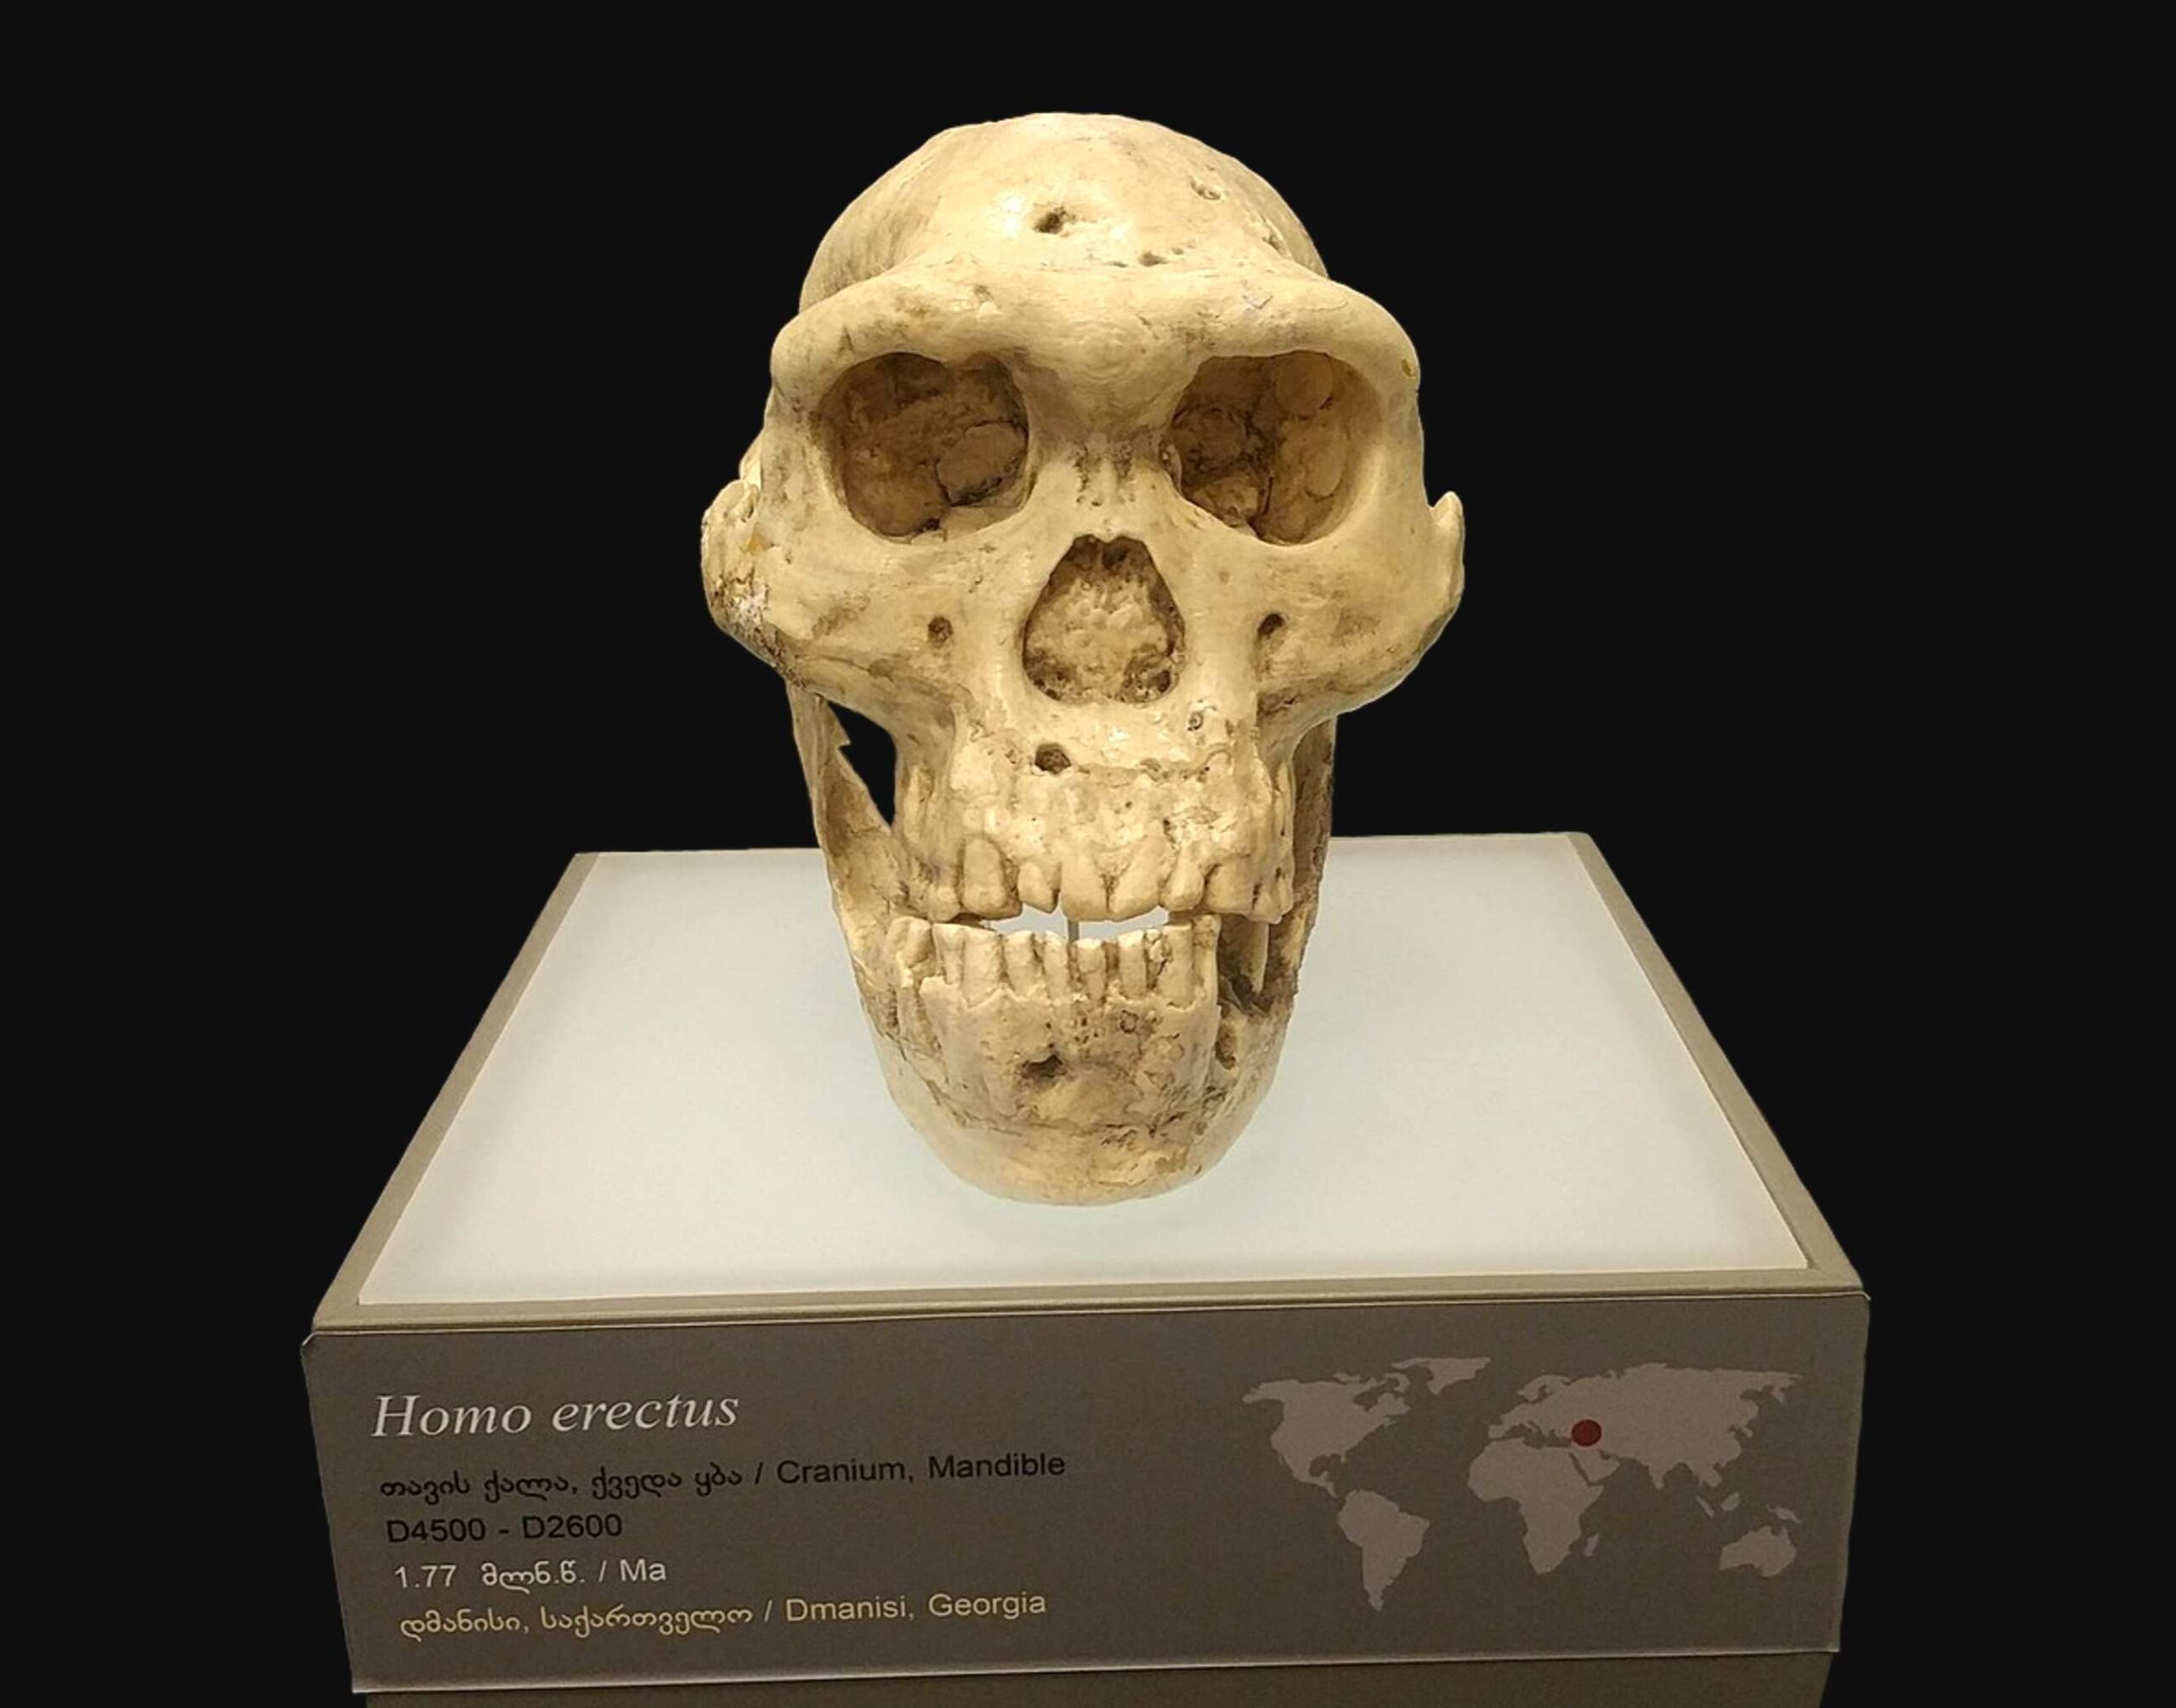 두개골 5: 1.85만 년 된 인간 두개골로 인해 과학자들은 초기 인류 진화를 재고하게 되었습니다 1